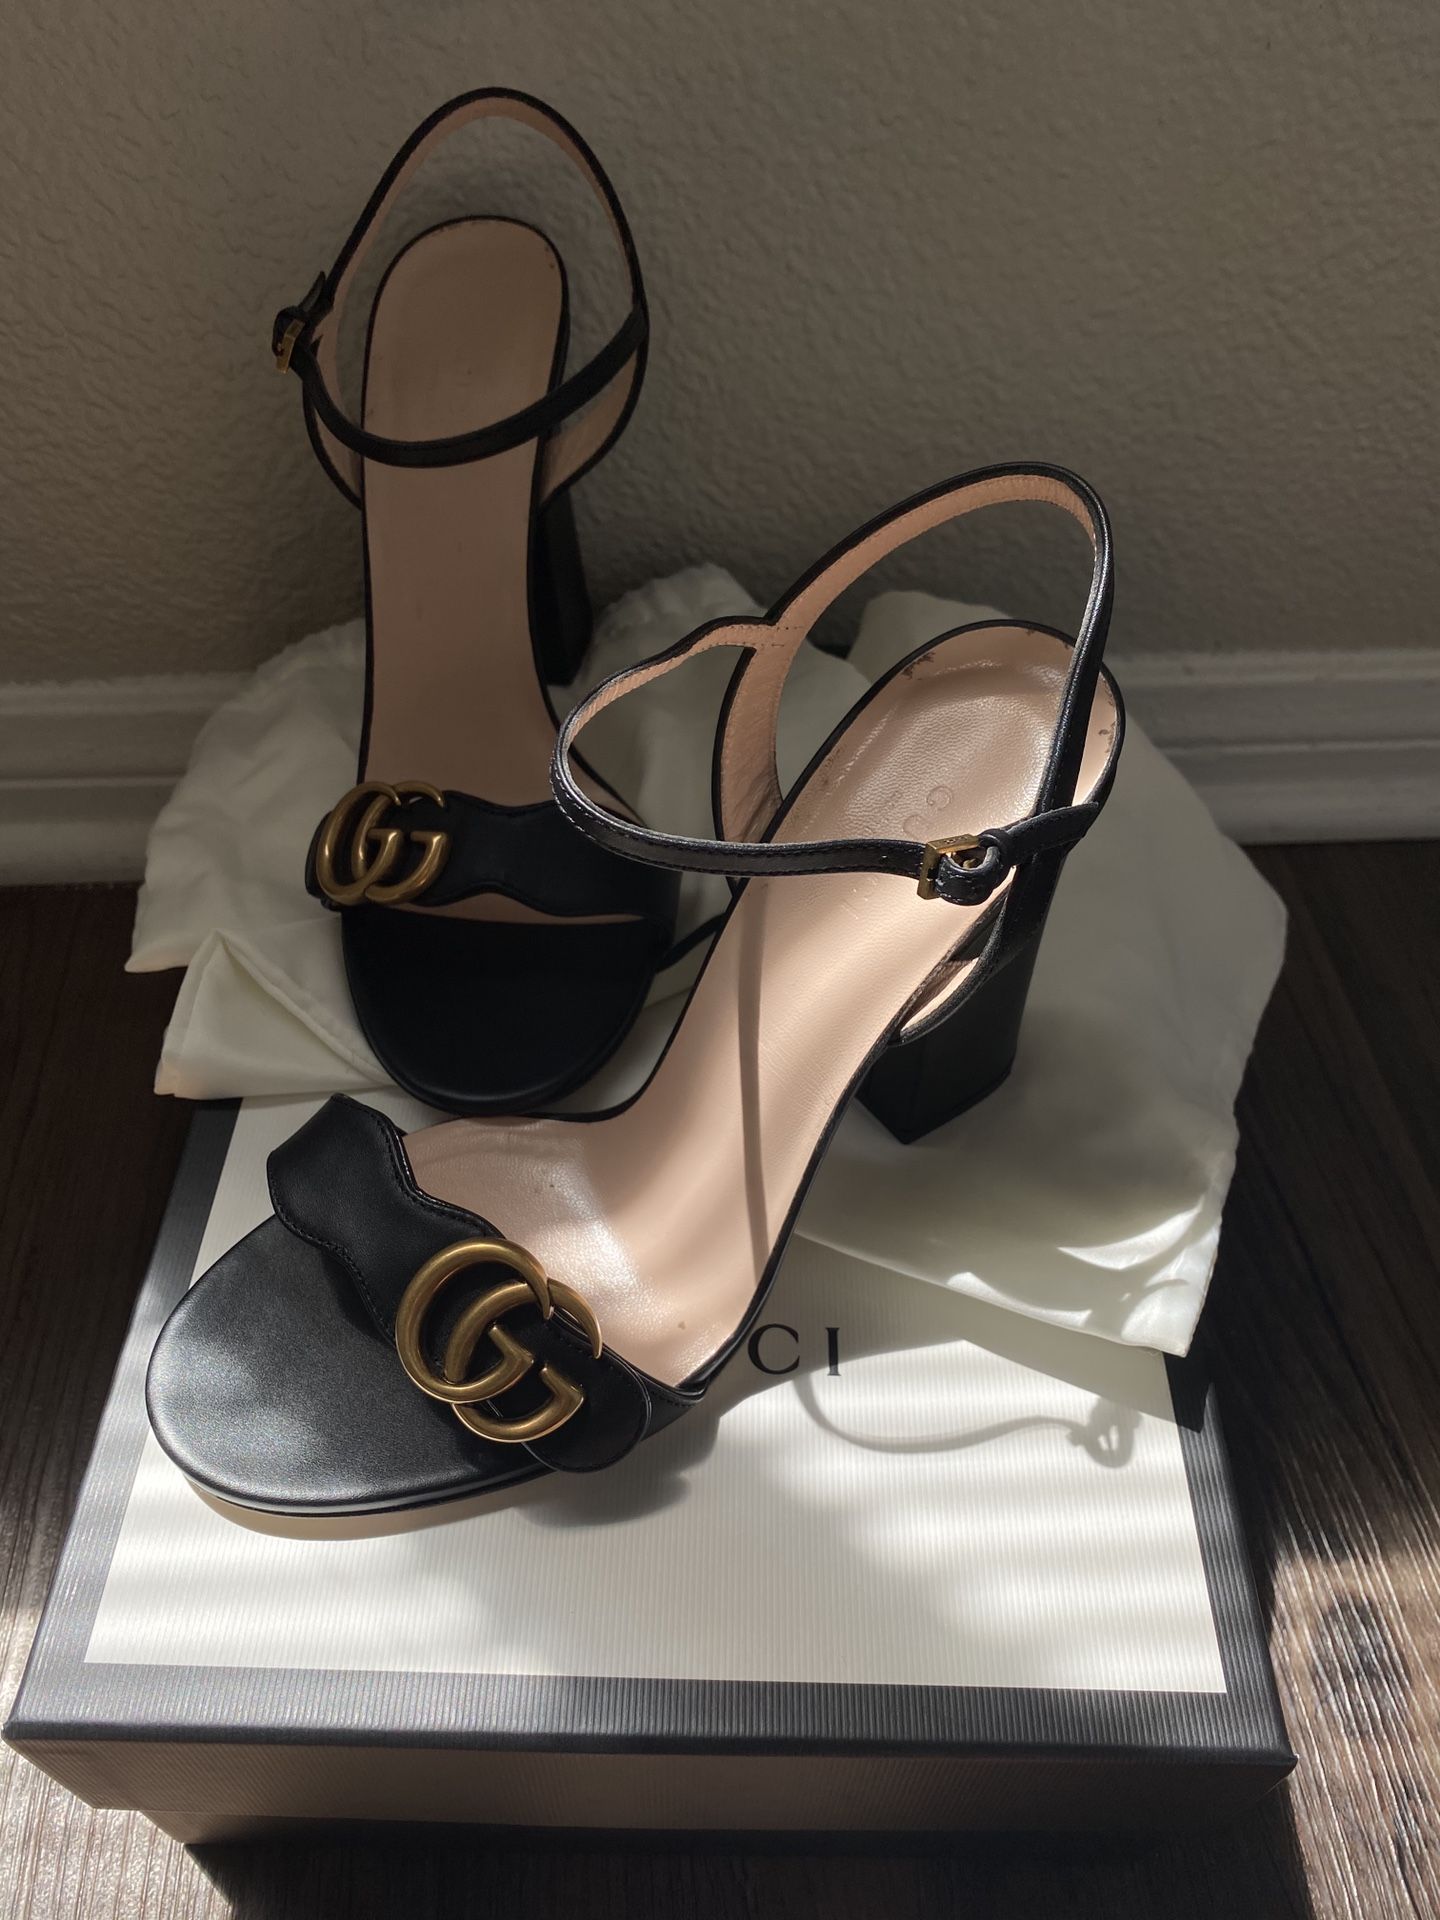 Gucci heels